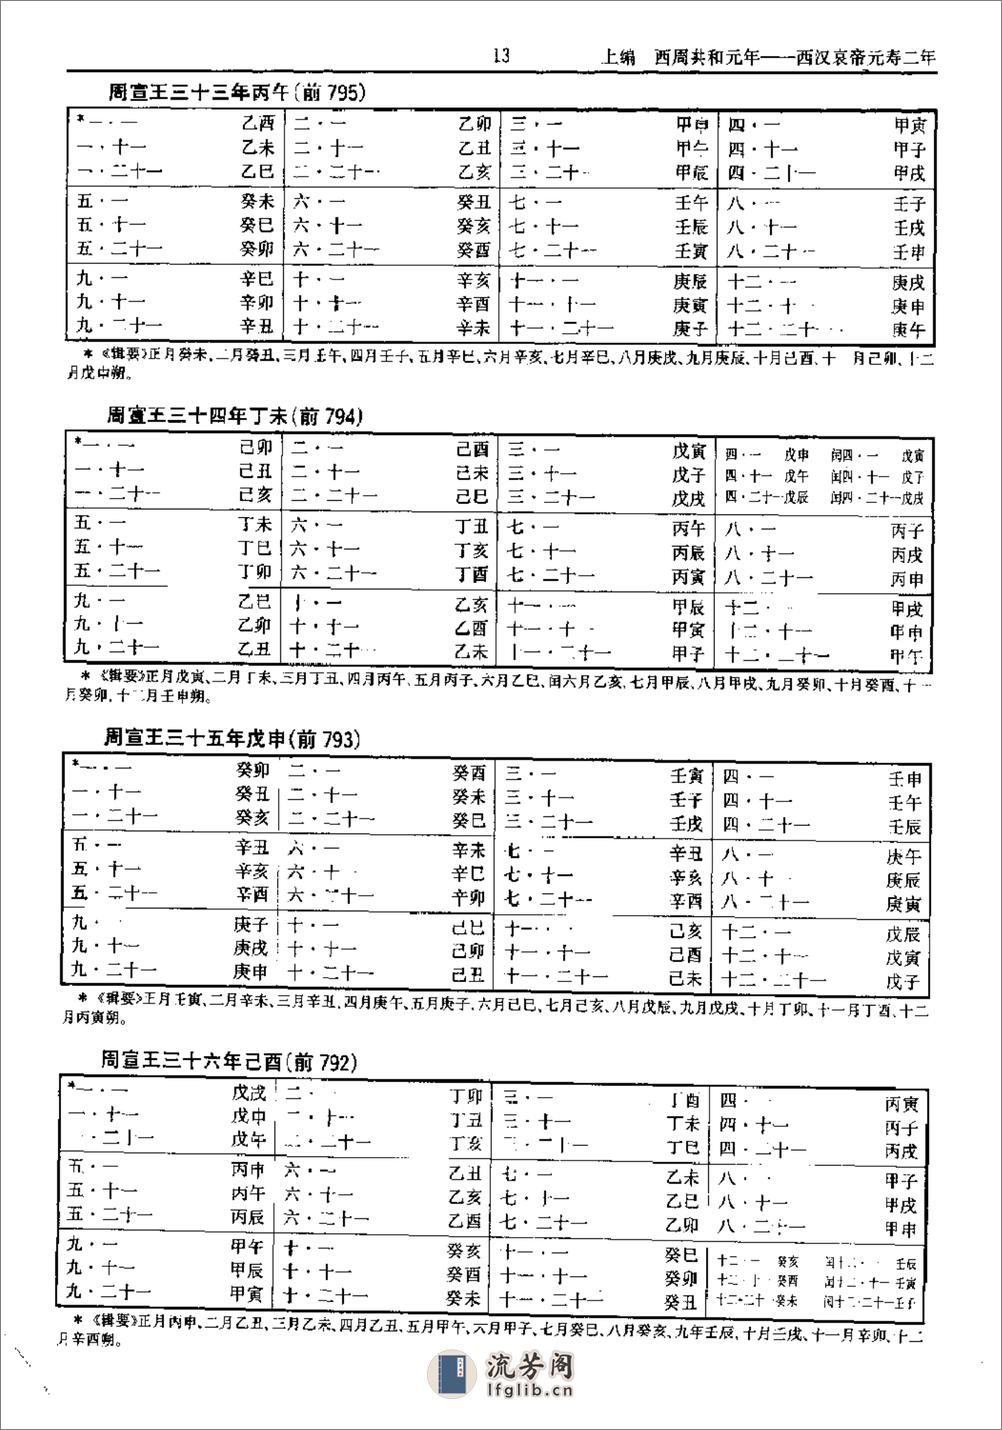 中国史历日和中西历日对照表·方诗铭·上海辞书1 - 第18页预览图